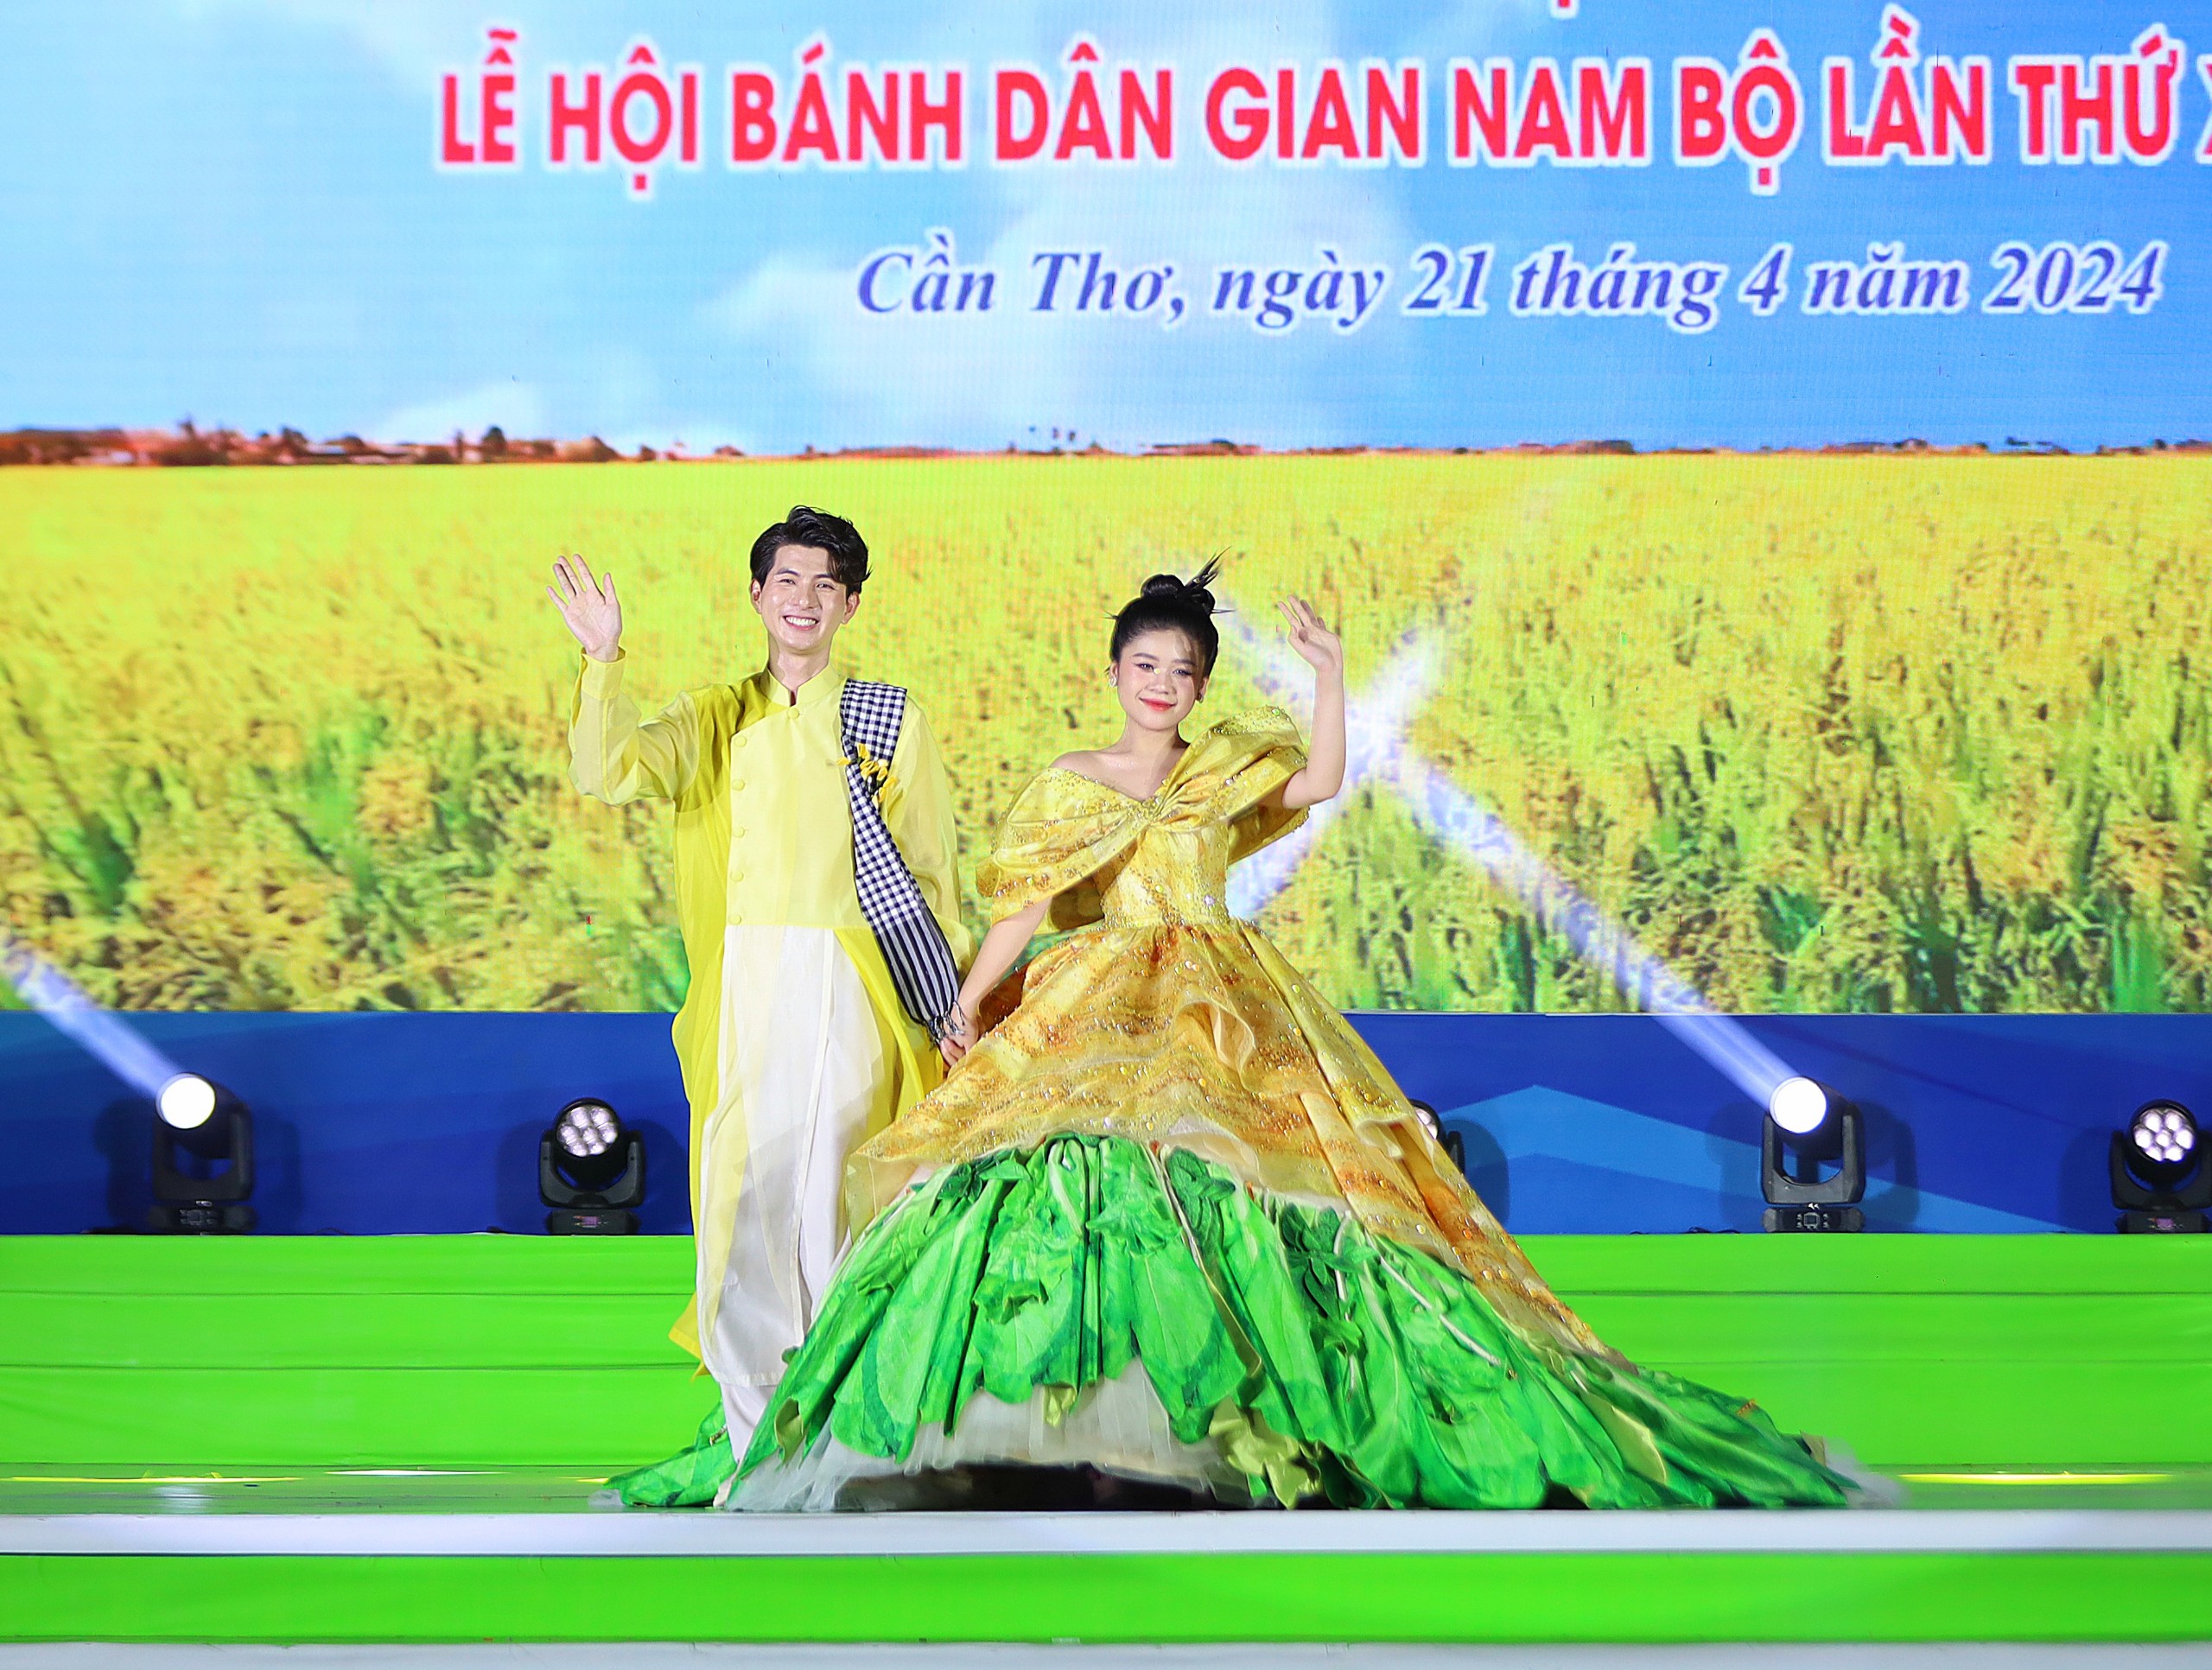 Trình diễn bộ thời trang bánh xèo của Nhà thiết kế Nguyễn Minh Công với mong muốn lan tỏa thông điệp bảo tồn và phát huy những giá trị văn hóa ẩm thực đặc sắc Nam Bộ.